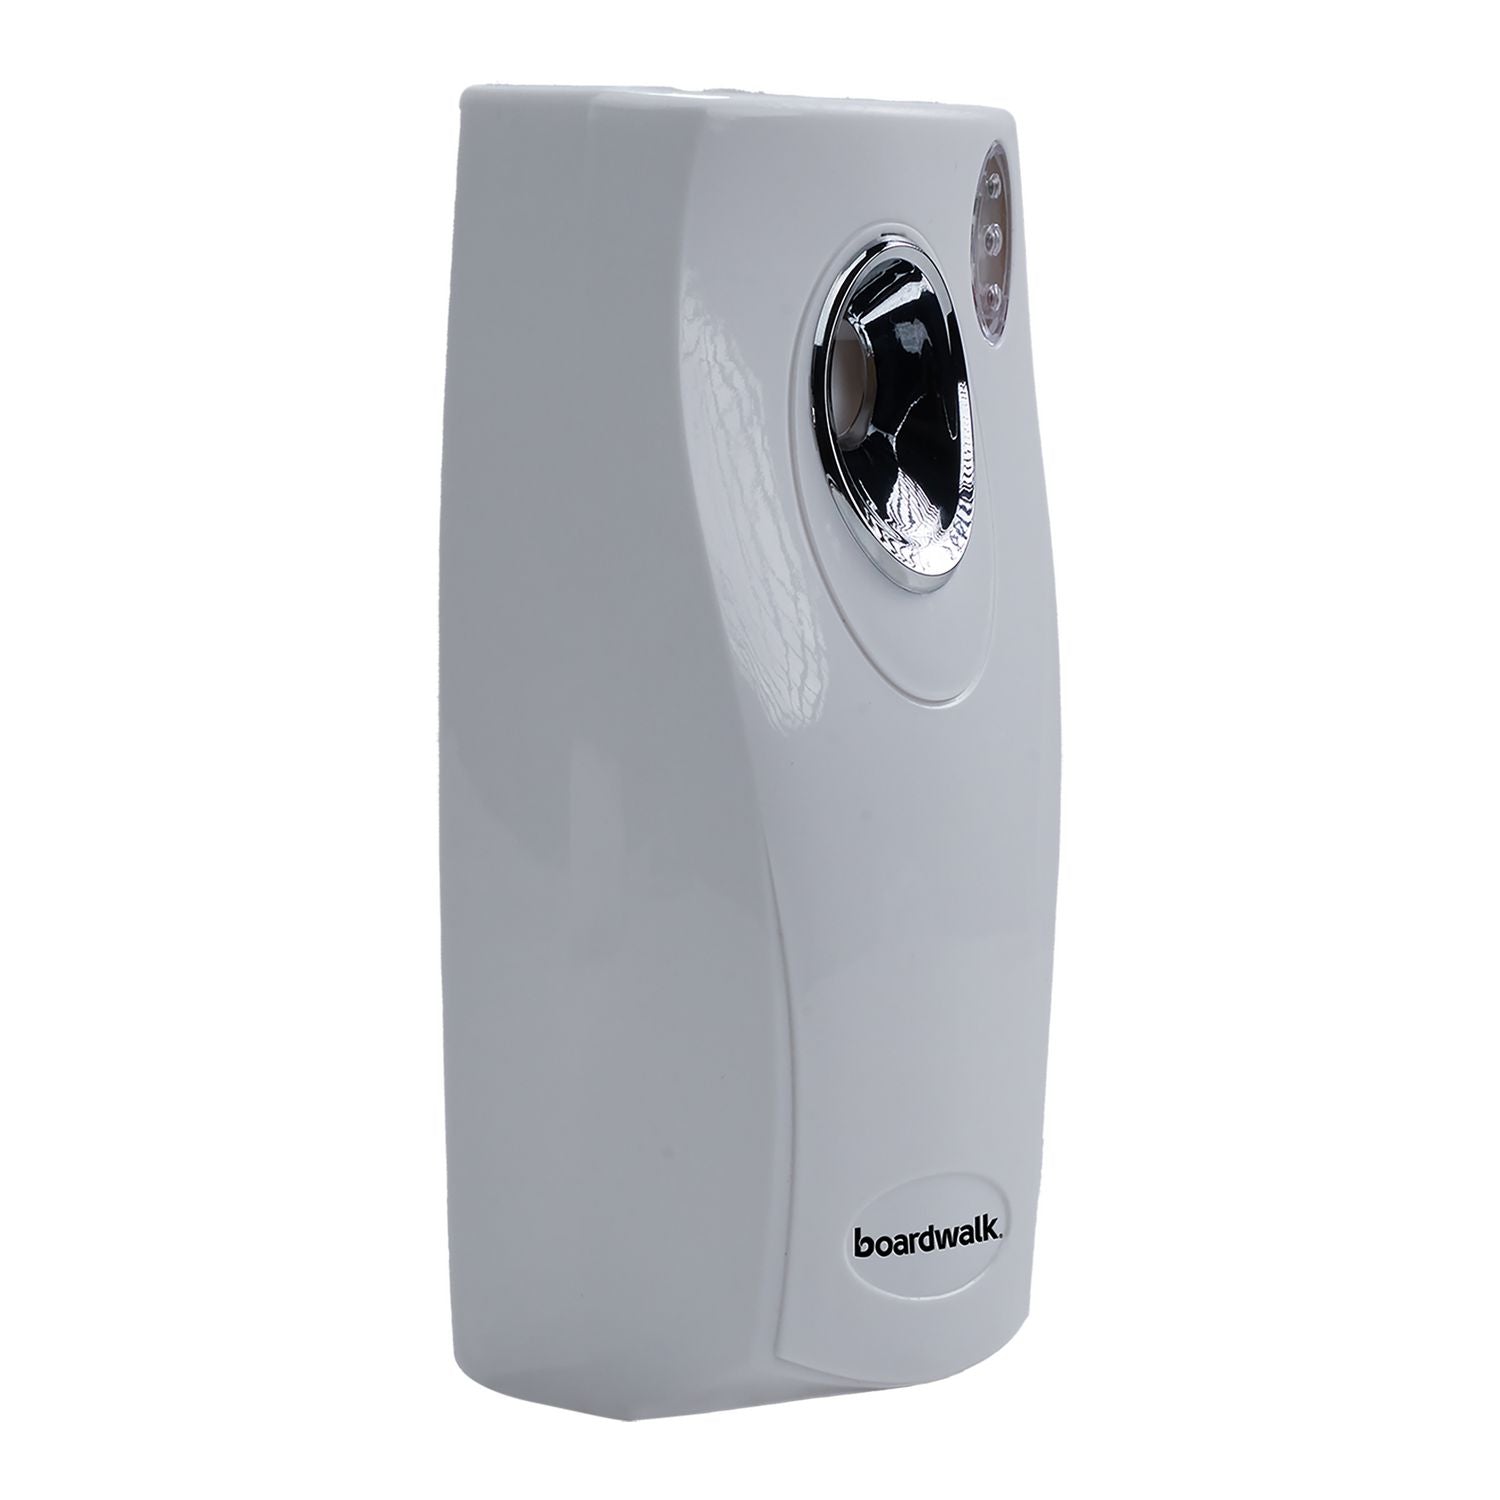 metered-air-freshener-dispenser-95-x-35-x-375-white-12-carton_bwk908ct - 1